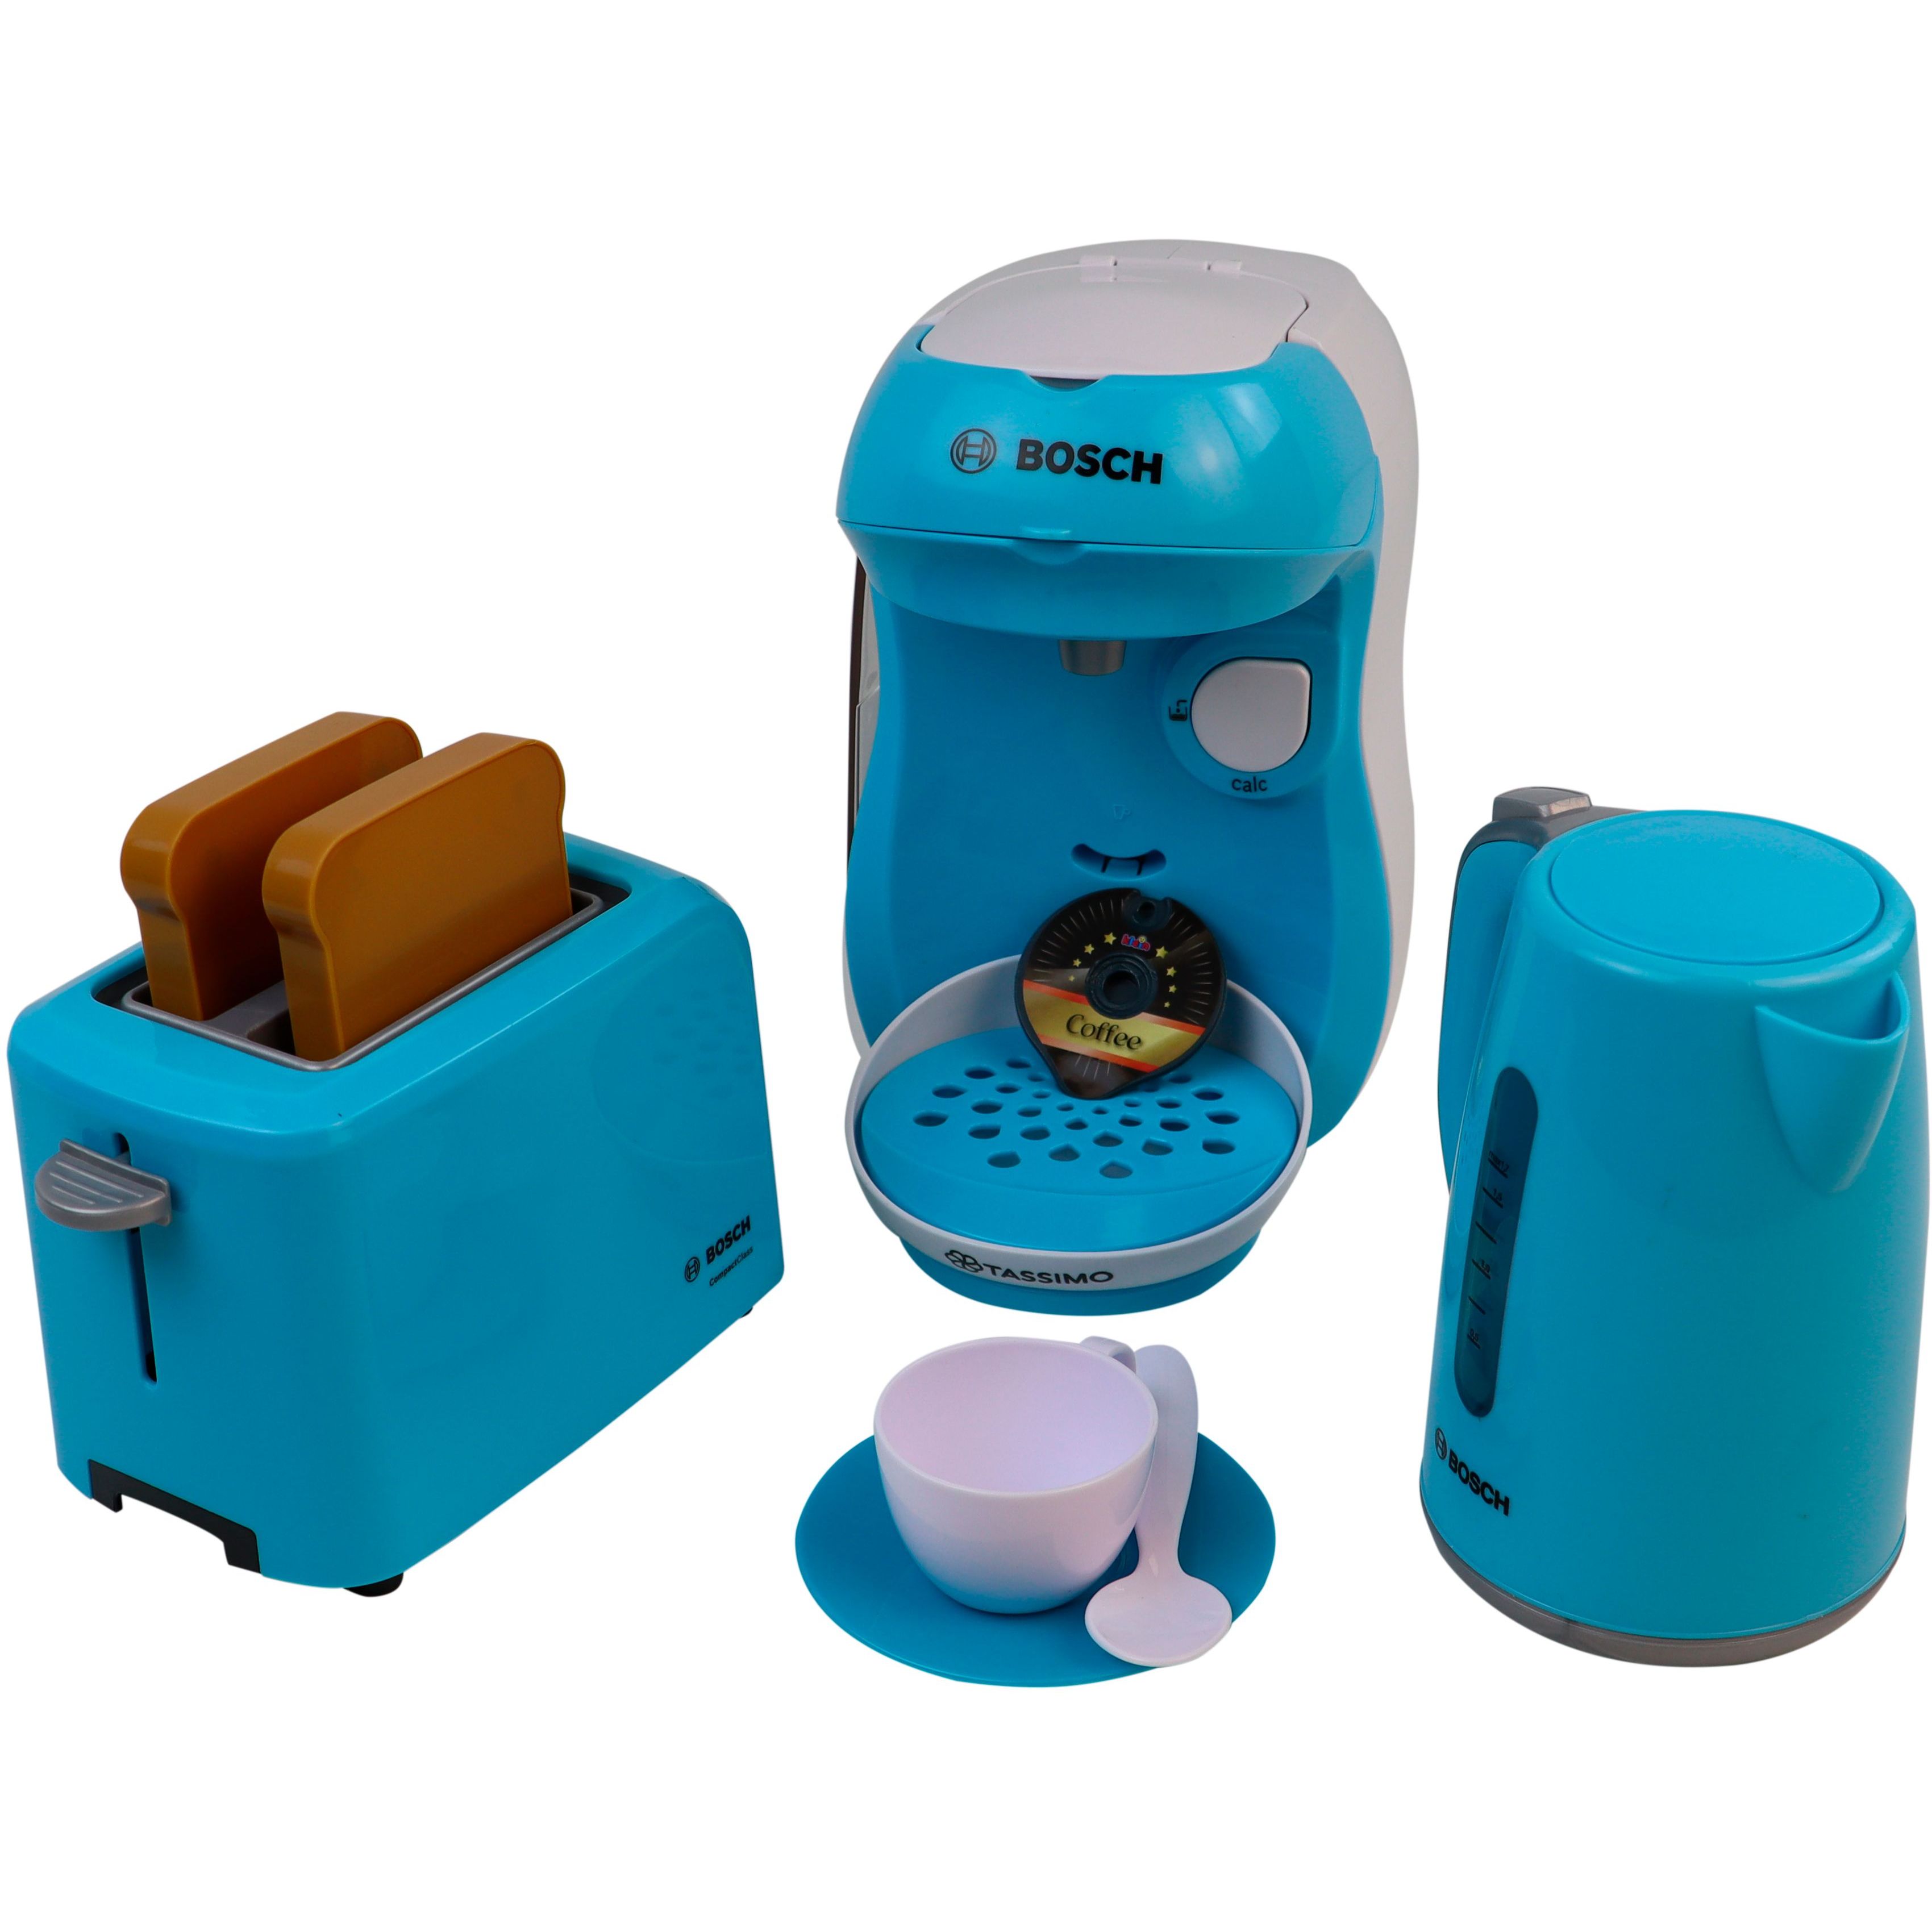 Іграшковий набір Bosch Mini для сніданку бірюзовий (9519) - фото 2